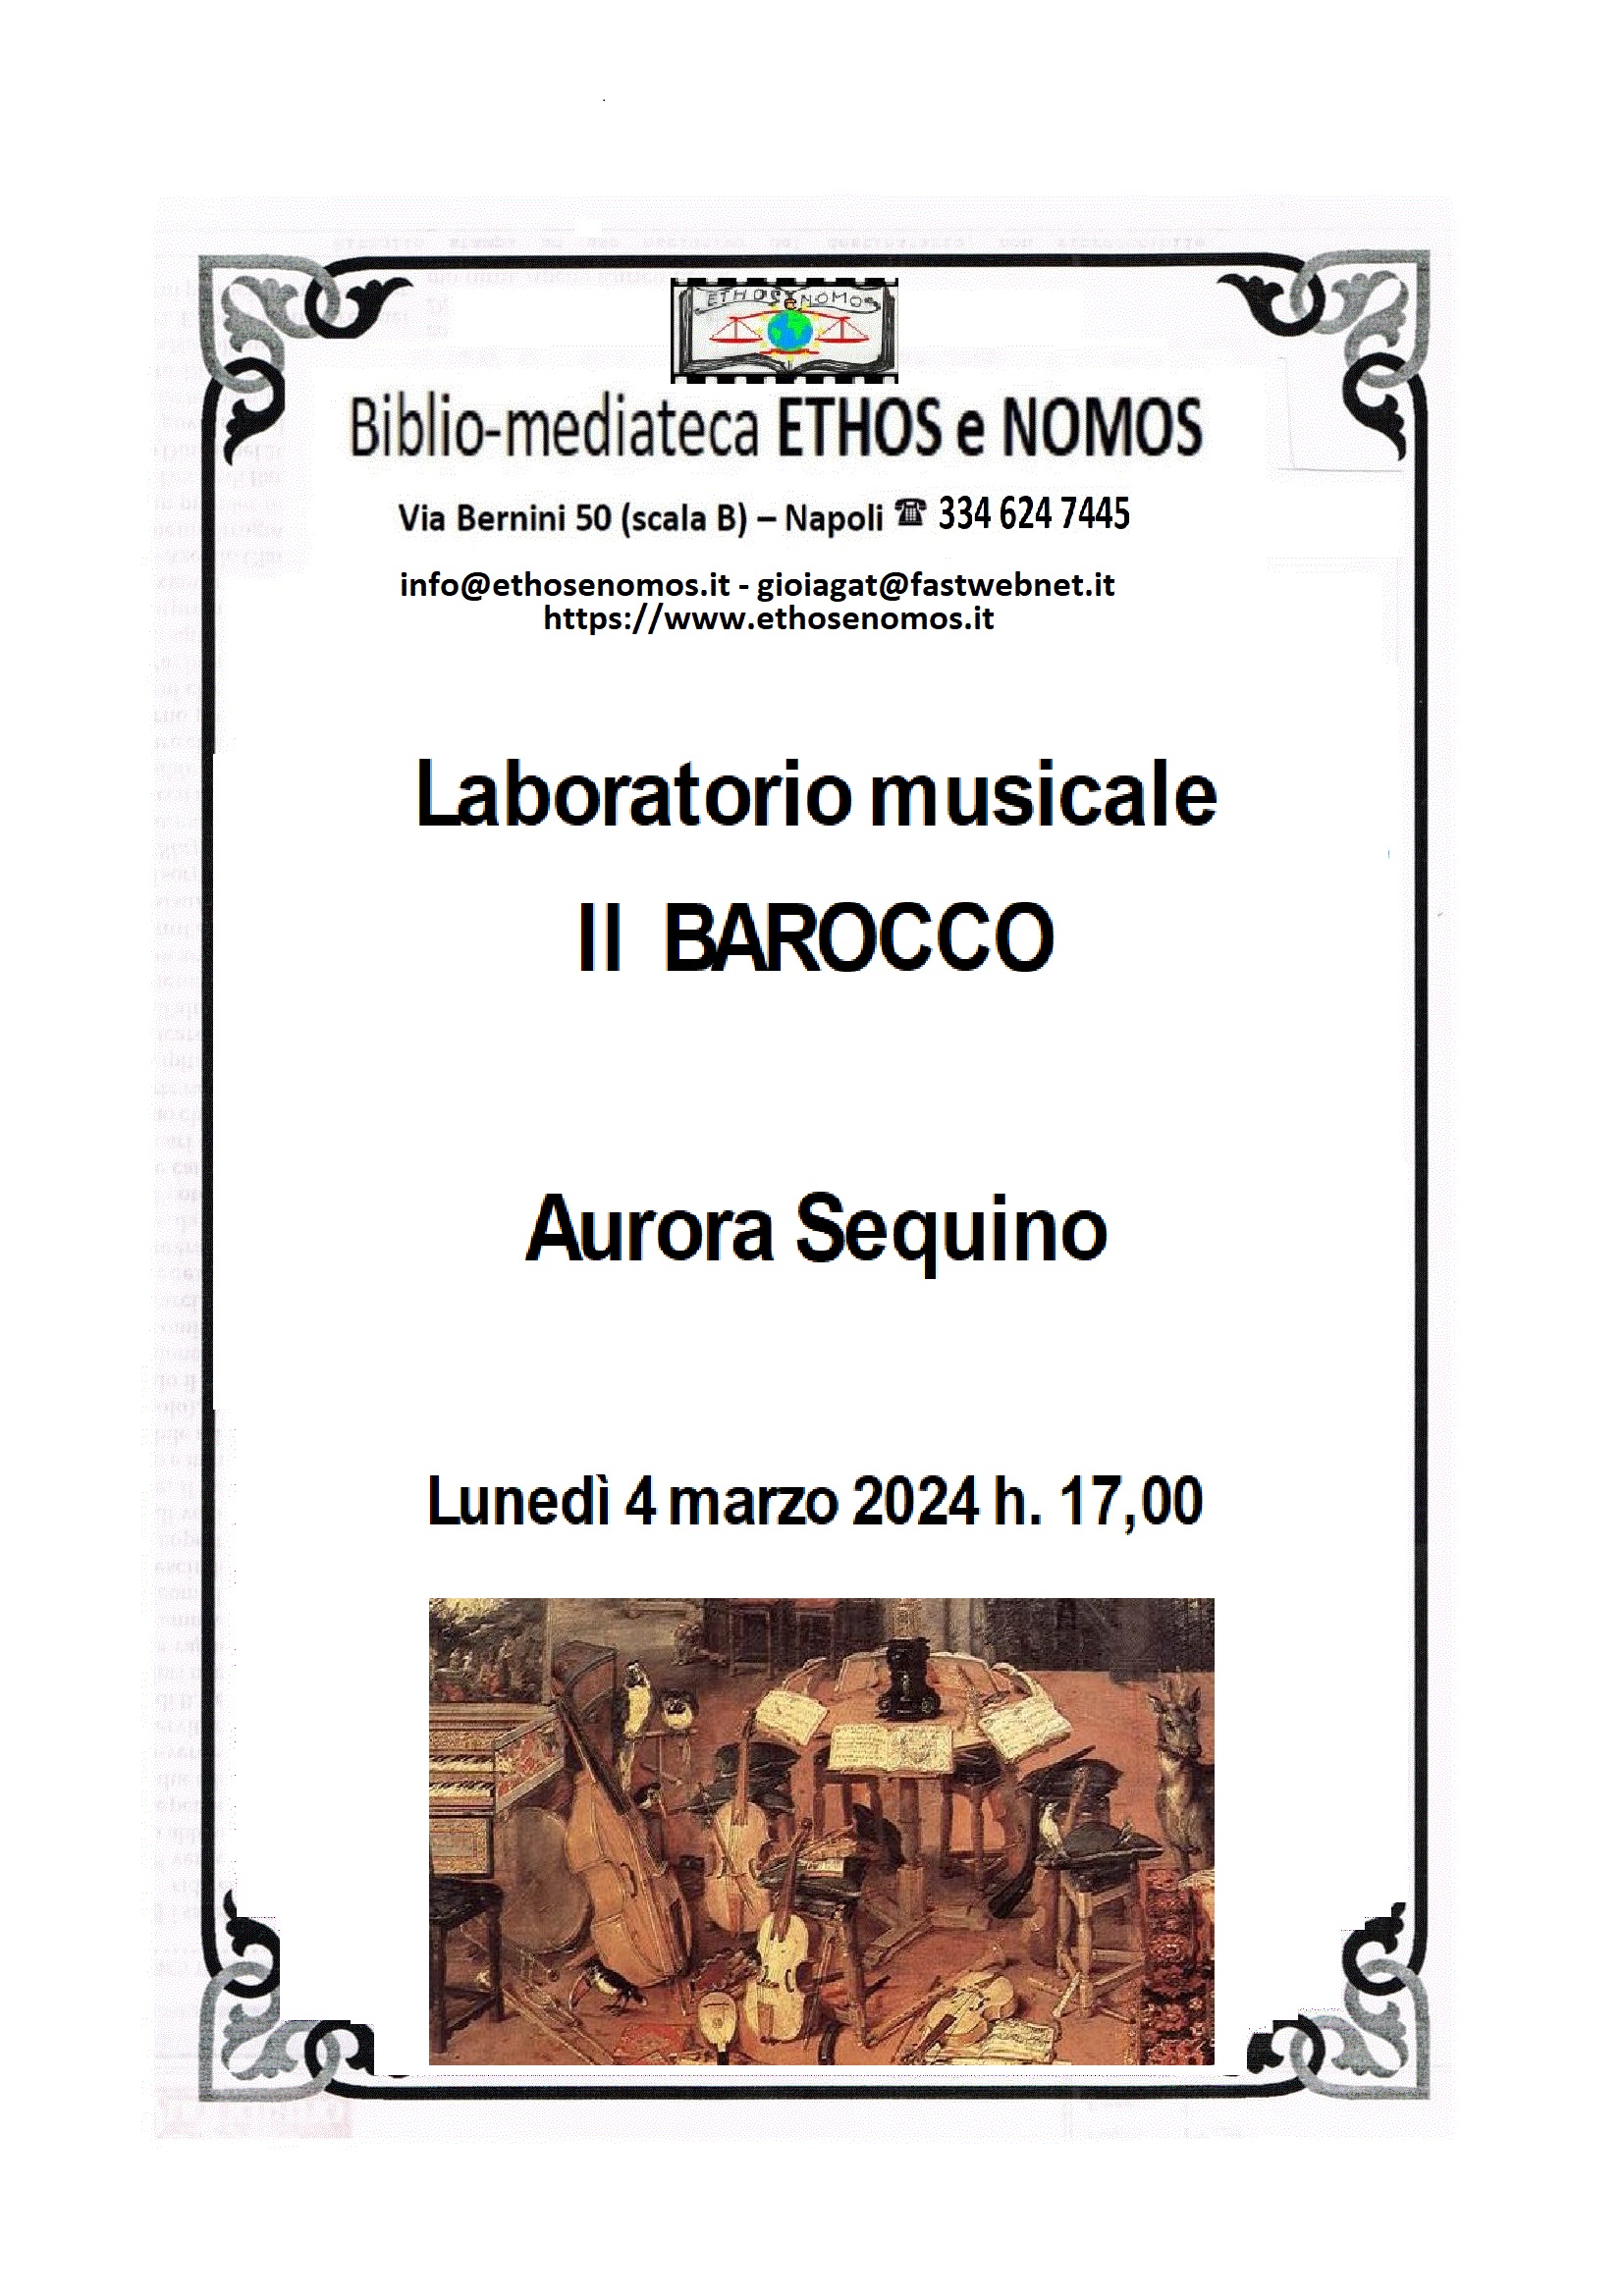 Aurora Sequino - Laboratorio musicale: Il Barocco musicale